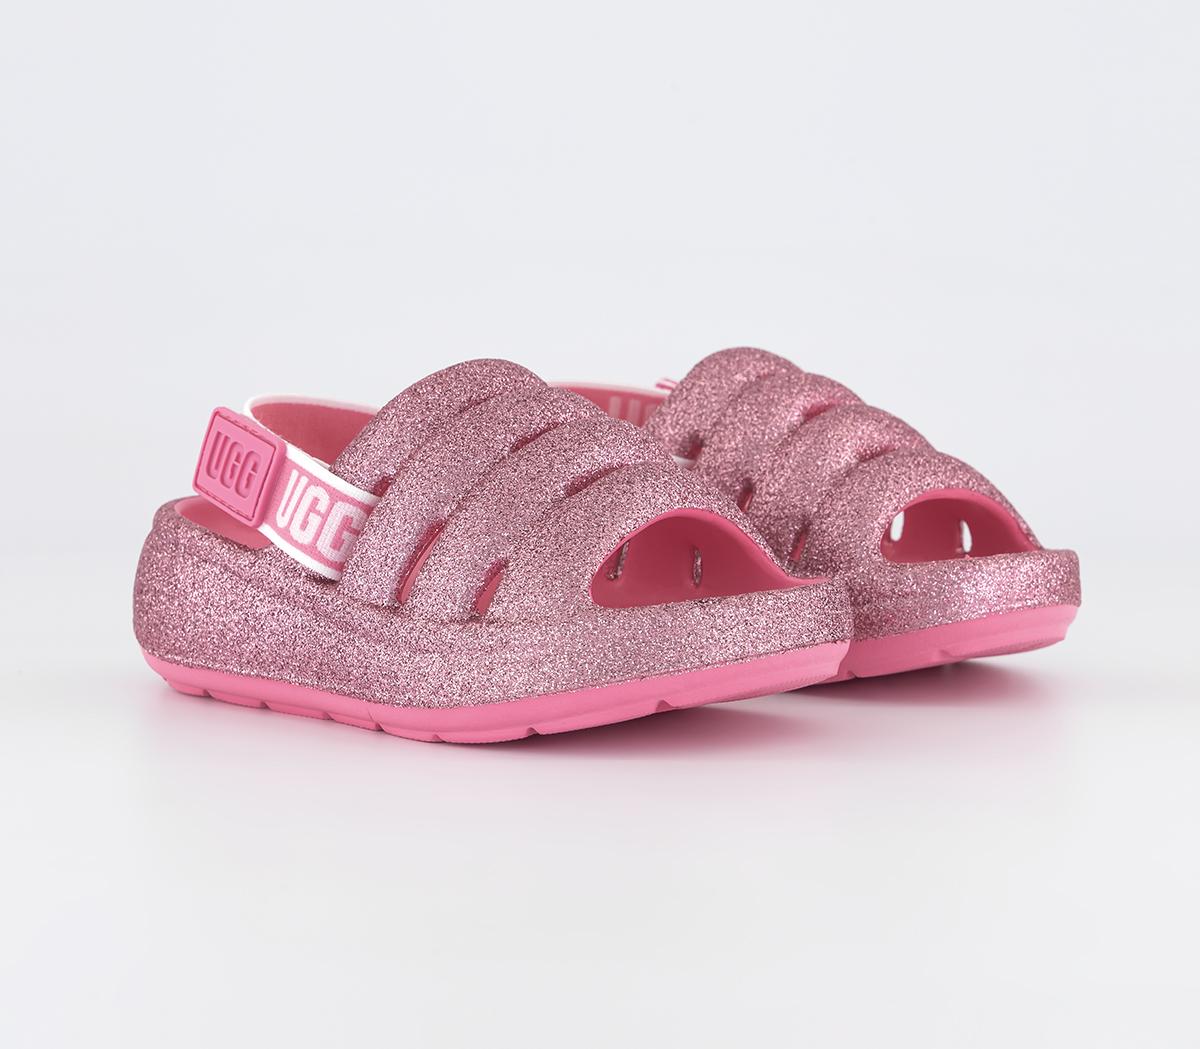 UGG Kids Sport Yeah Infant Sandals Pink Glitter, 5infant